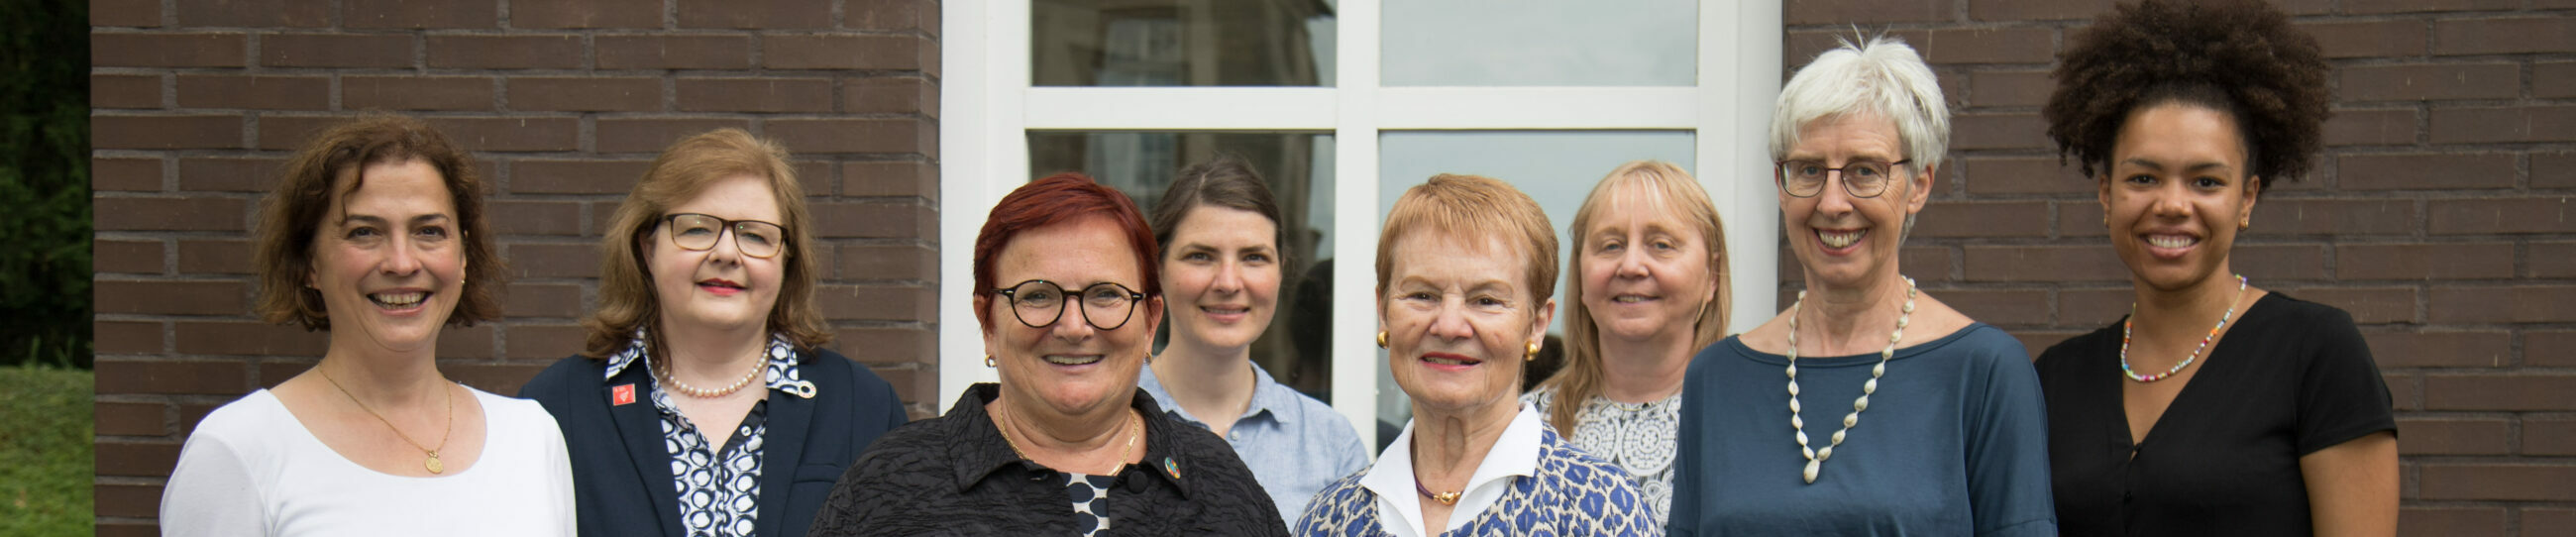 Gruppenfoto des Vorstandes von UN Women Deutschland e.V. 2022